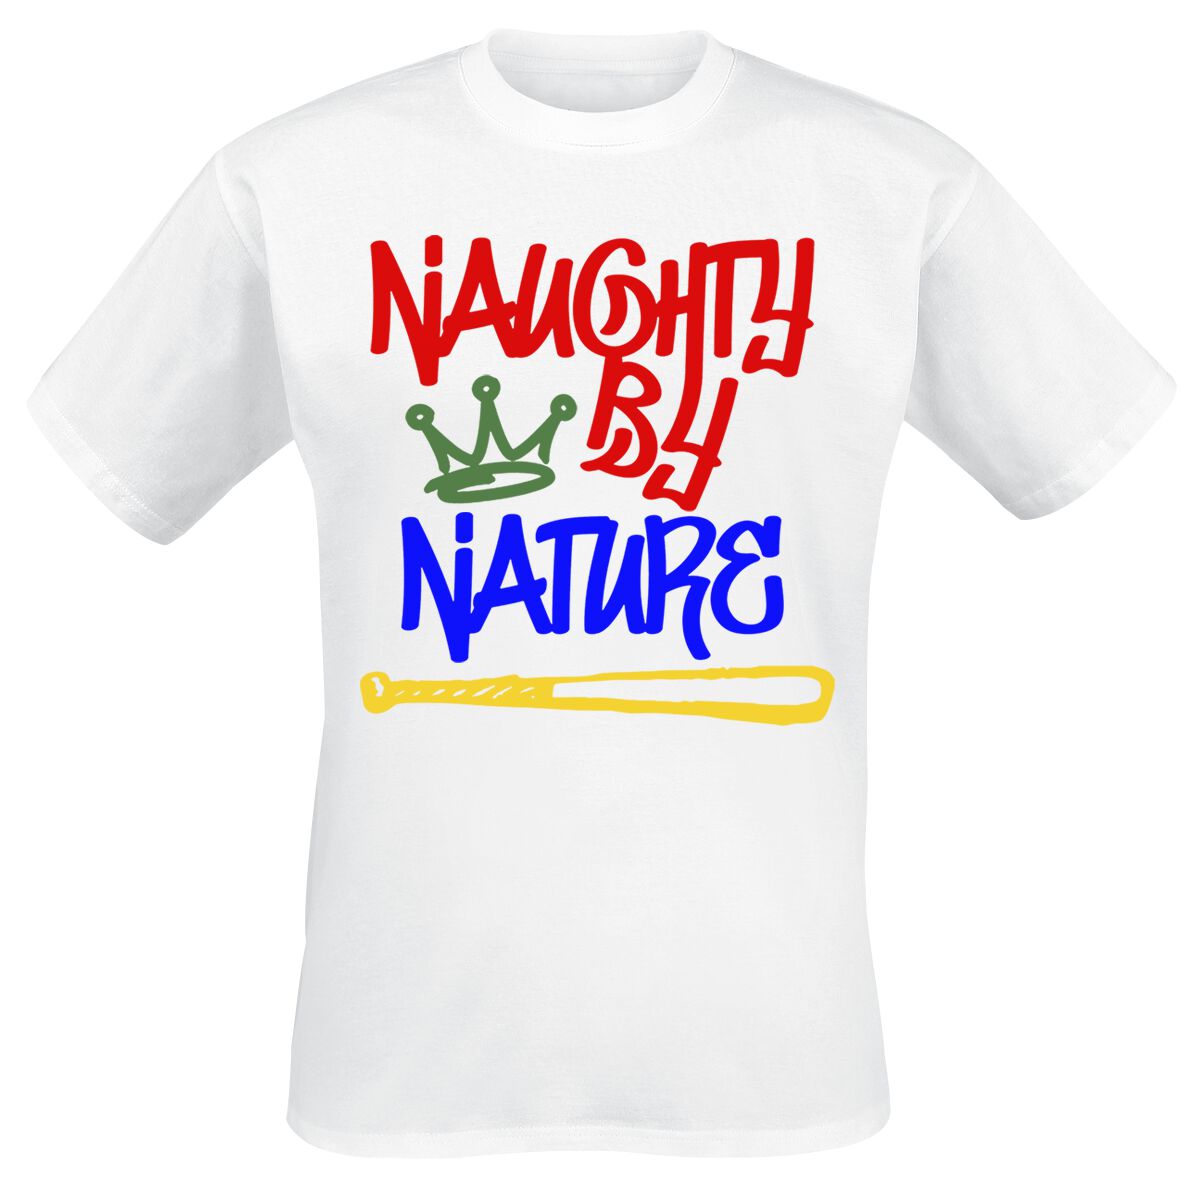 Naughty by Nature T-Shirt - Graffiti Logo - S bis 3XL - für Männer - Größe L - weiß  - Lizenziertes Merchandise!